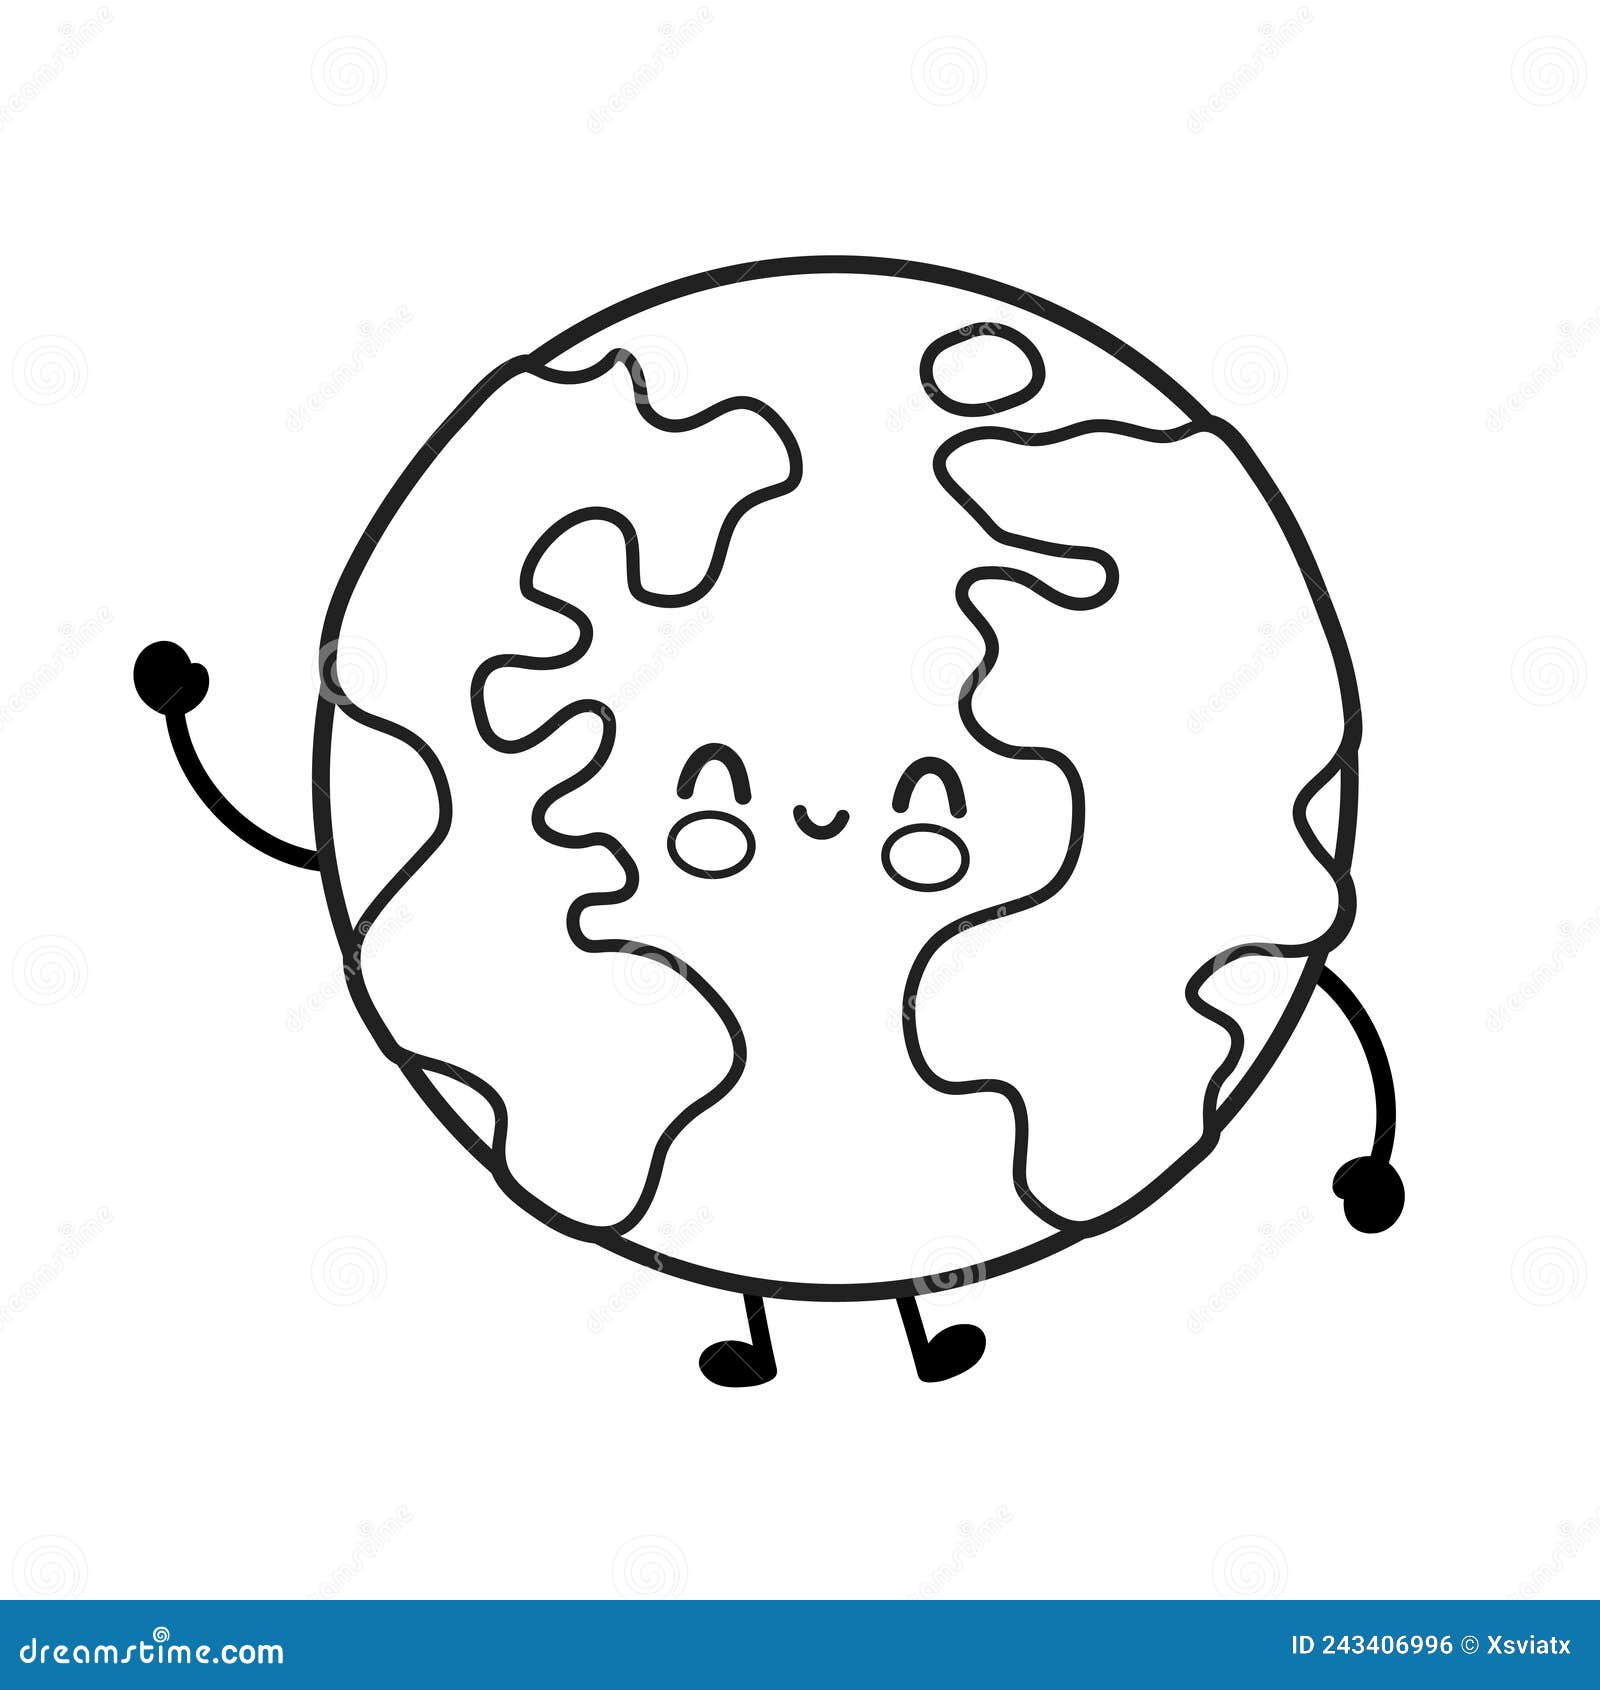 Desenho para colorir kawaii doodle cartoon planet